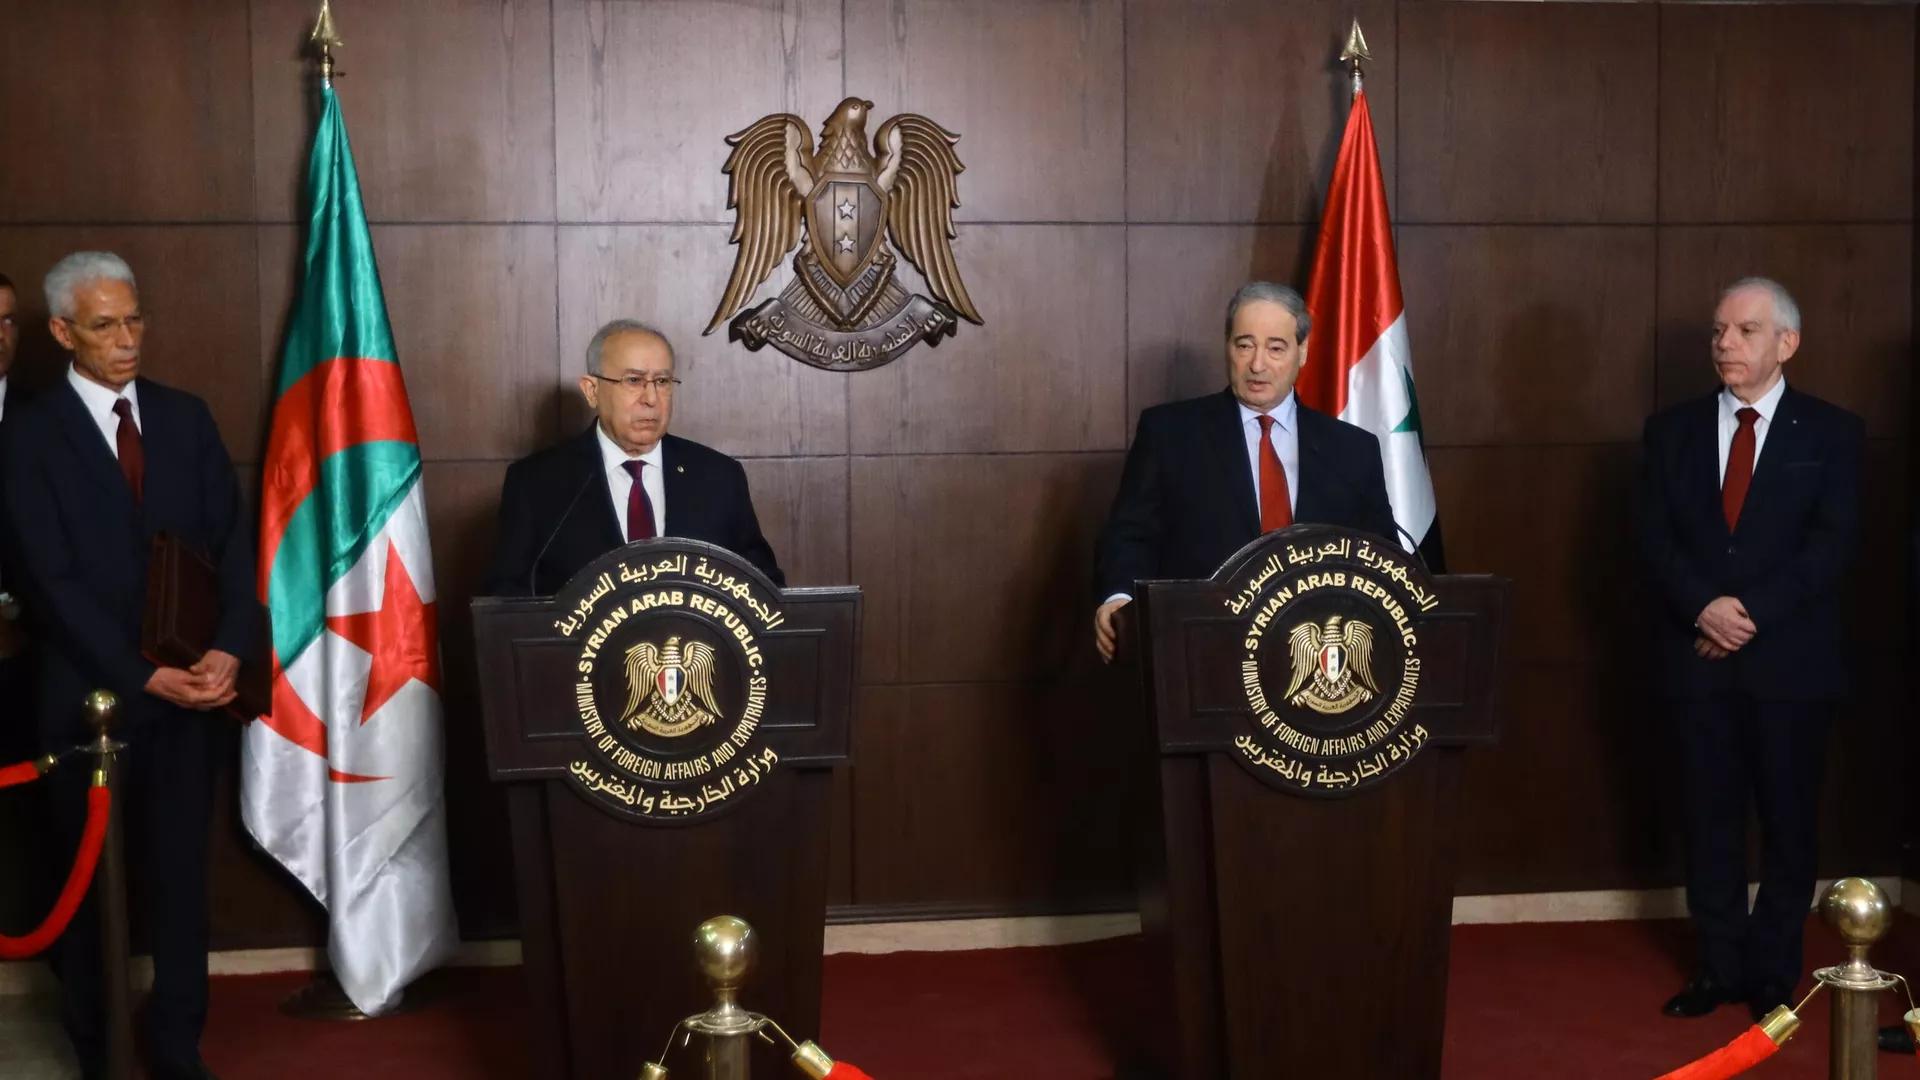 وزير الخارجية السوري يلتقي بنظيريه الجزائري والأردني ويبحث معهما العلاقات الثنائية